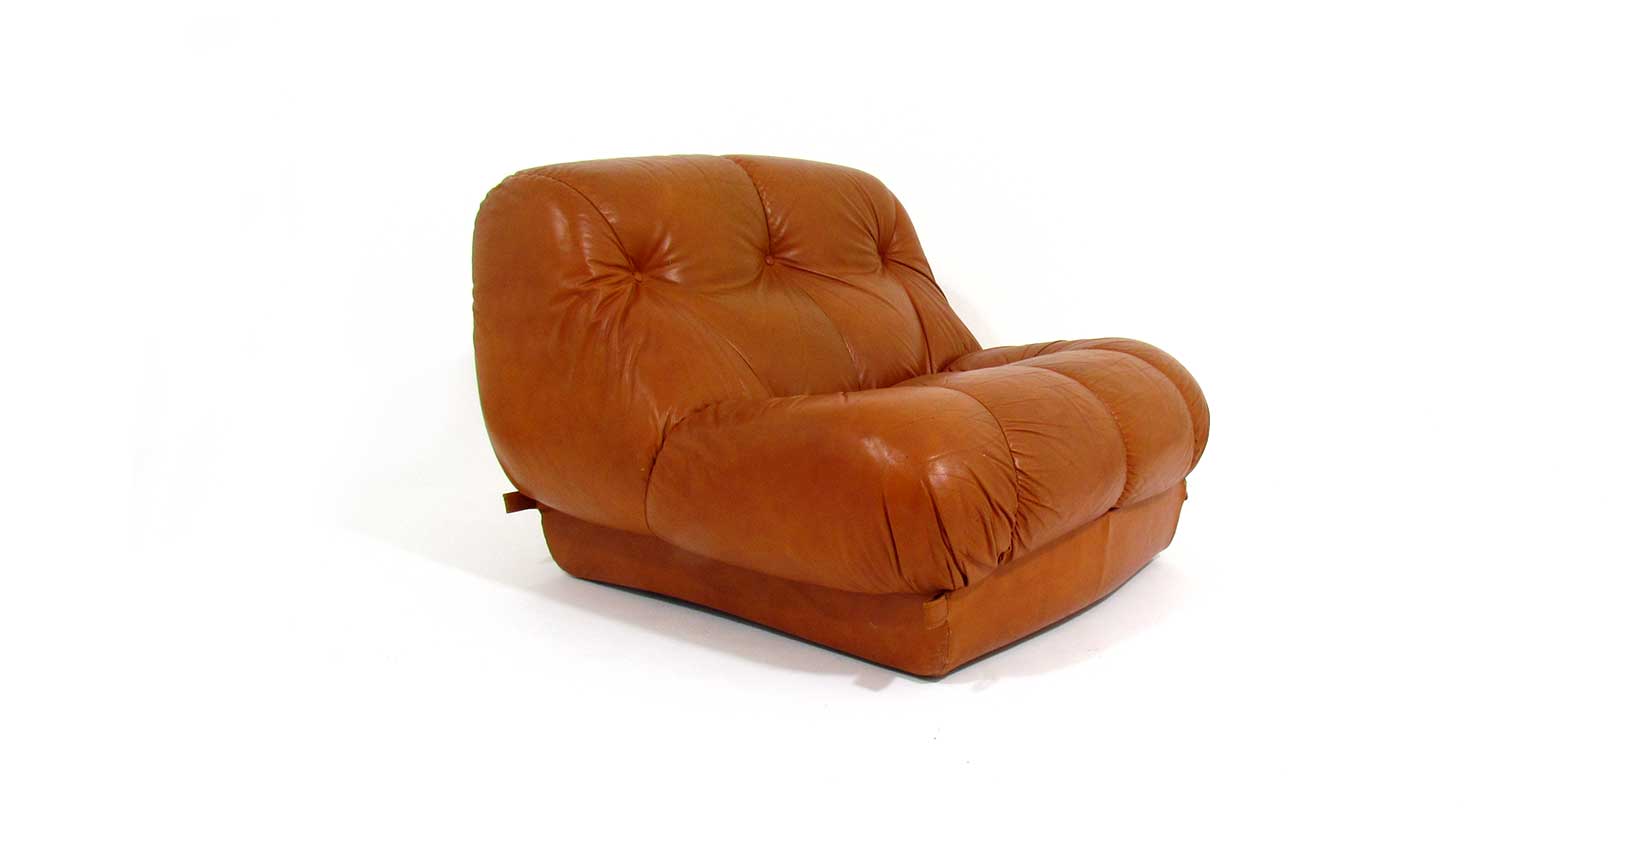 nuvolone sofa vintage design iconicdesign furniture mimo rino maturi leather